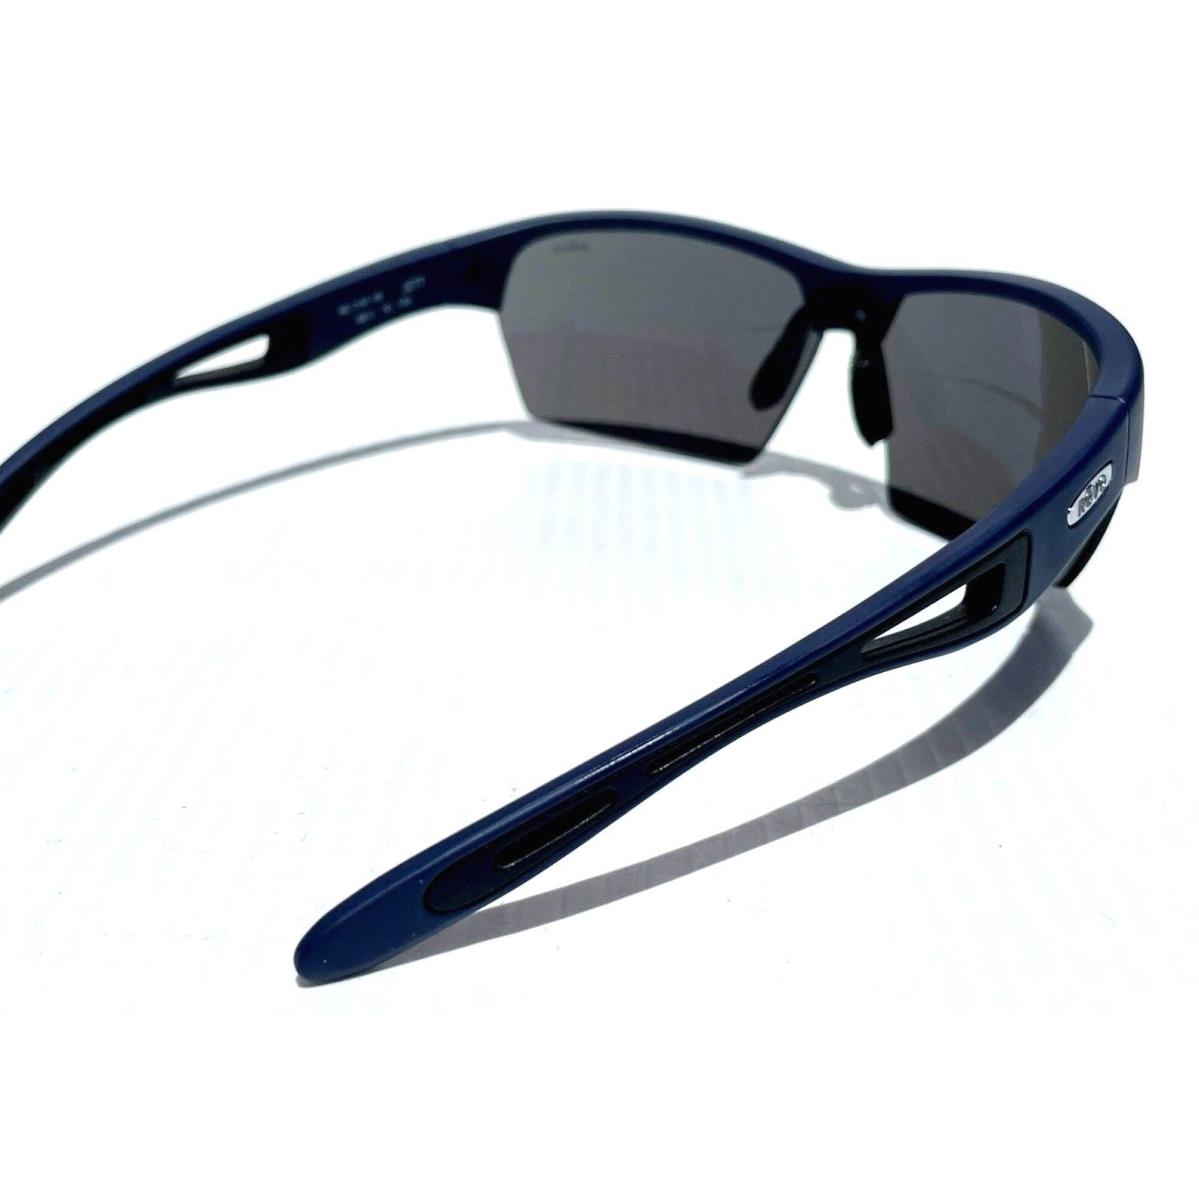 Revo sunglasses JETT - Navy Frame, Gray Lens 3